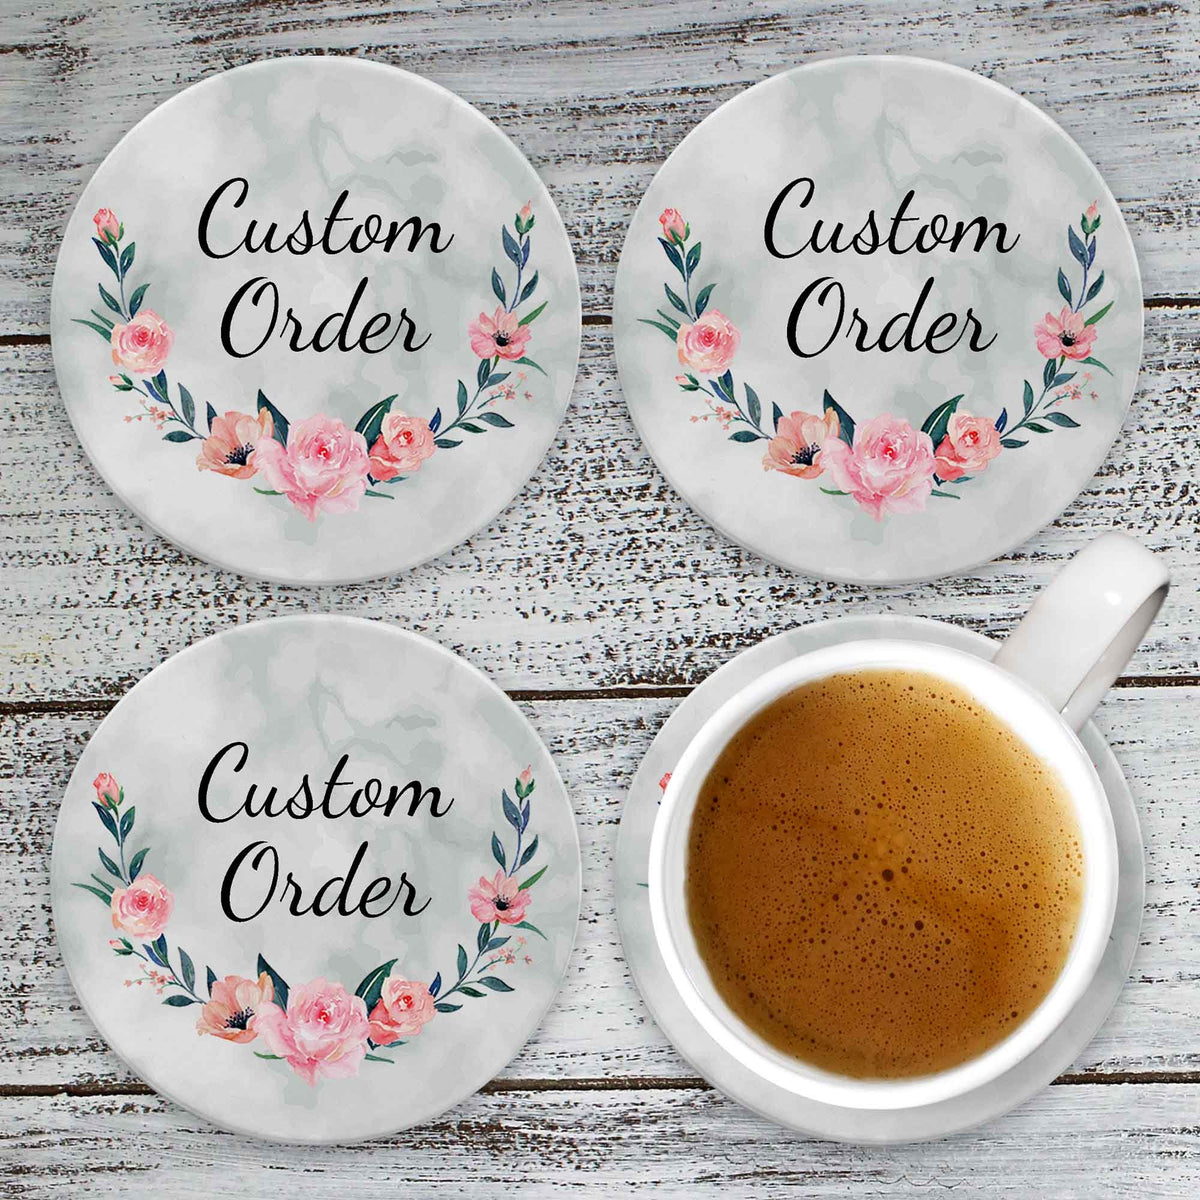 Personalized Coasters | Custom Stone Coaster Set | Custom Order | Set of 4